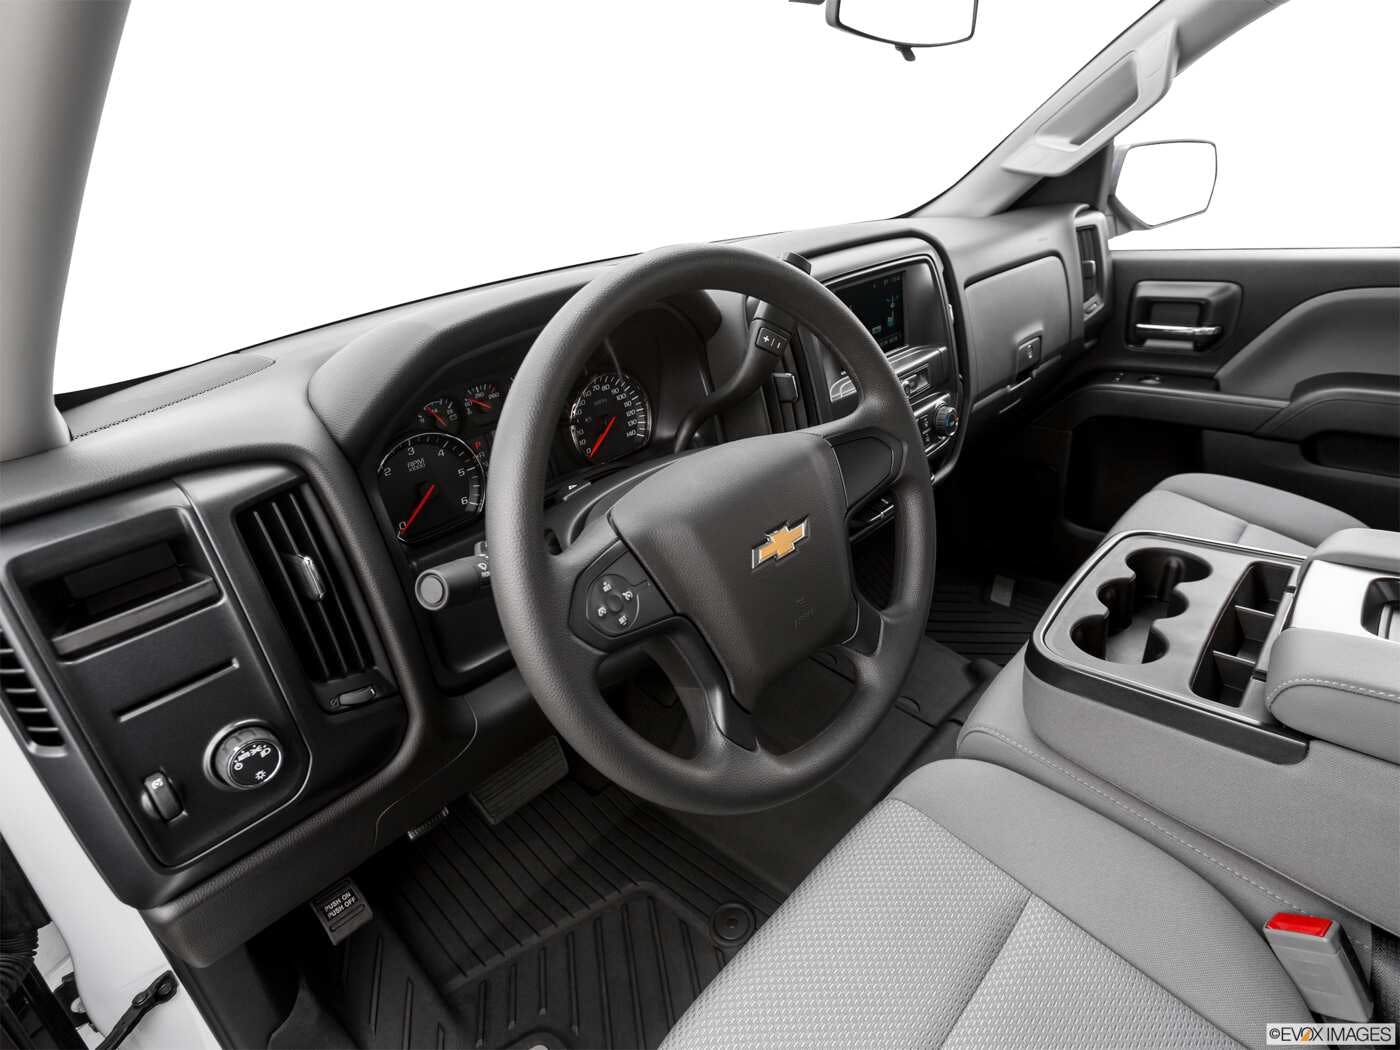 2019 Chevrolet Silverado 1500 LD Review | Pricing, Trims & Photos - TrueCar